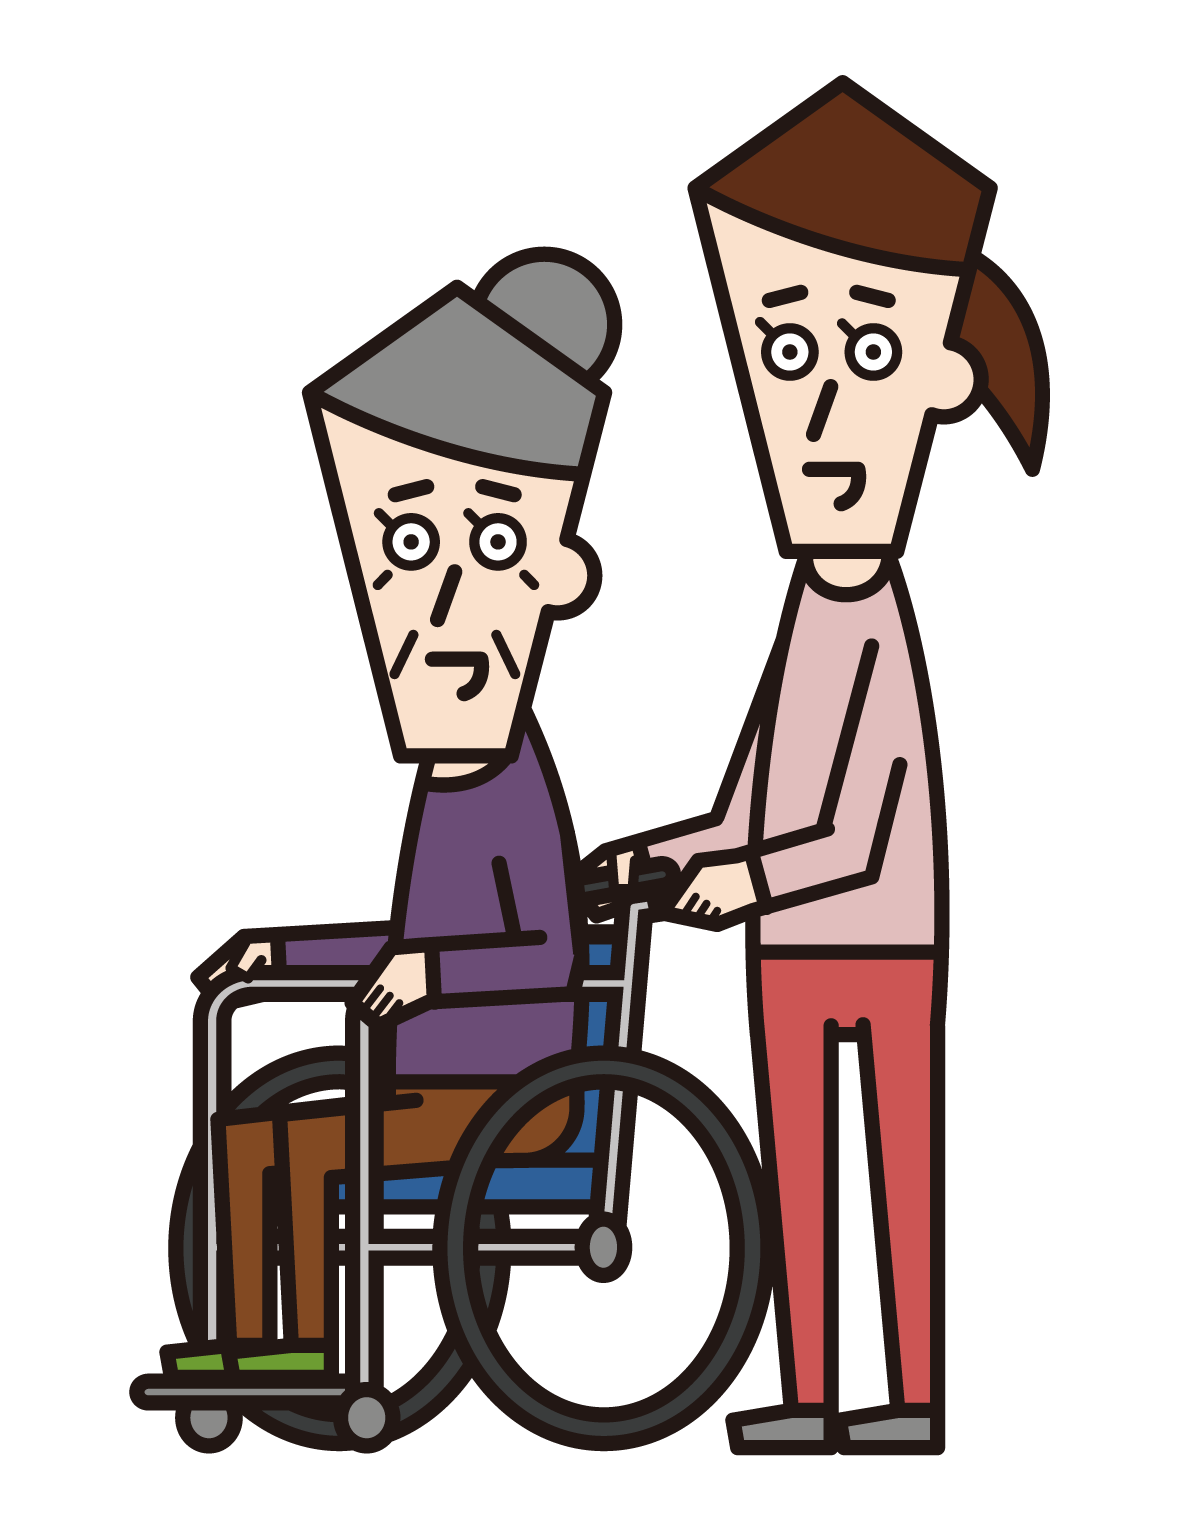 車椅子に乗っている人（おばあさん）と押す人（女性）のイラスト